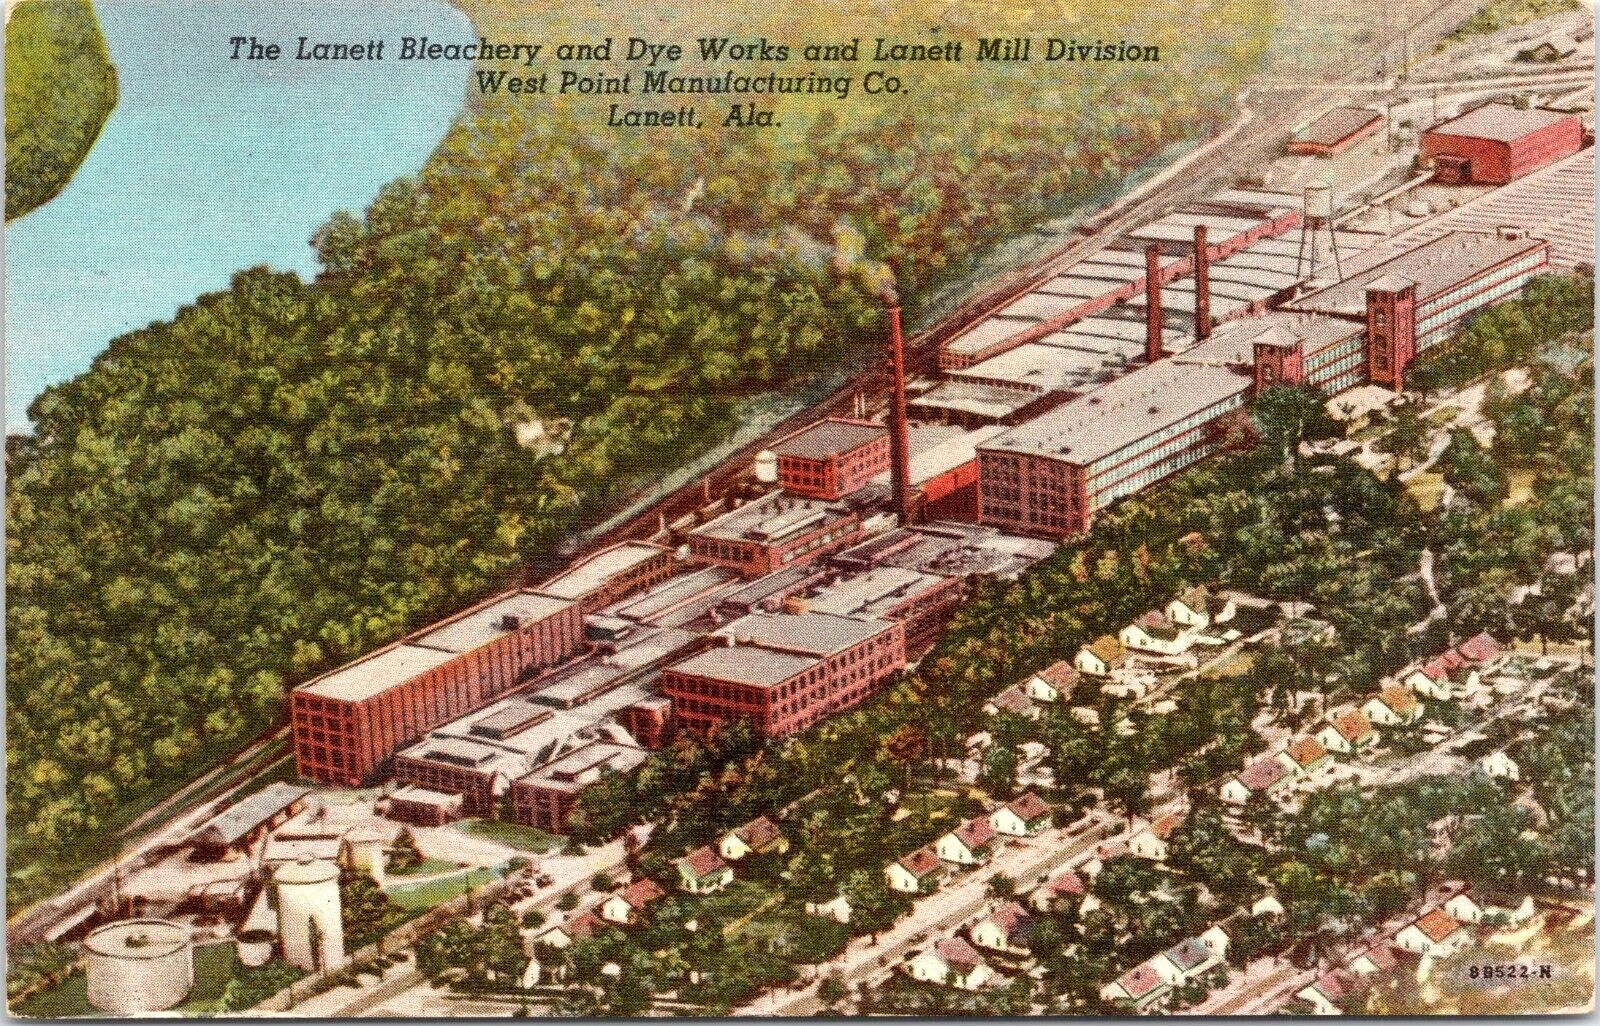 Lanett Bleachery and Dye Works, Lanett, Alabama - 1952 Linen Postcard